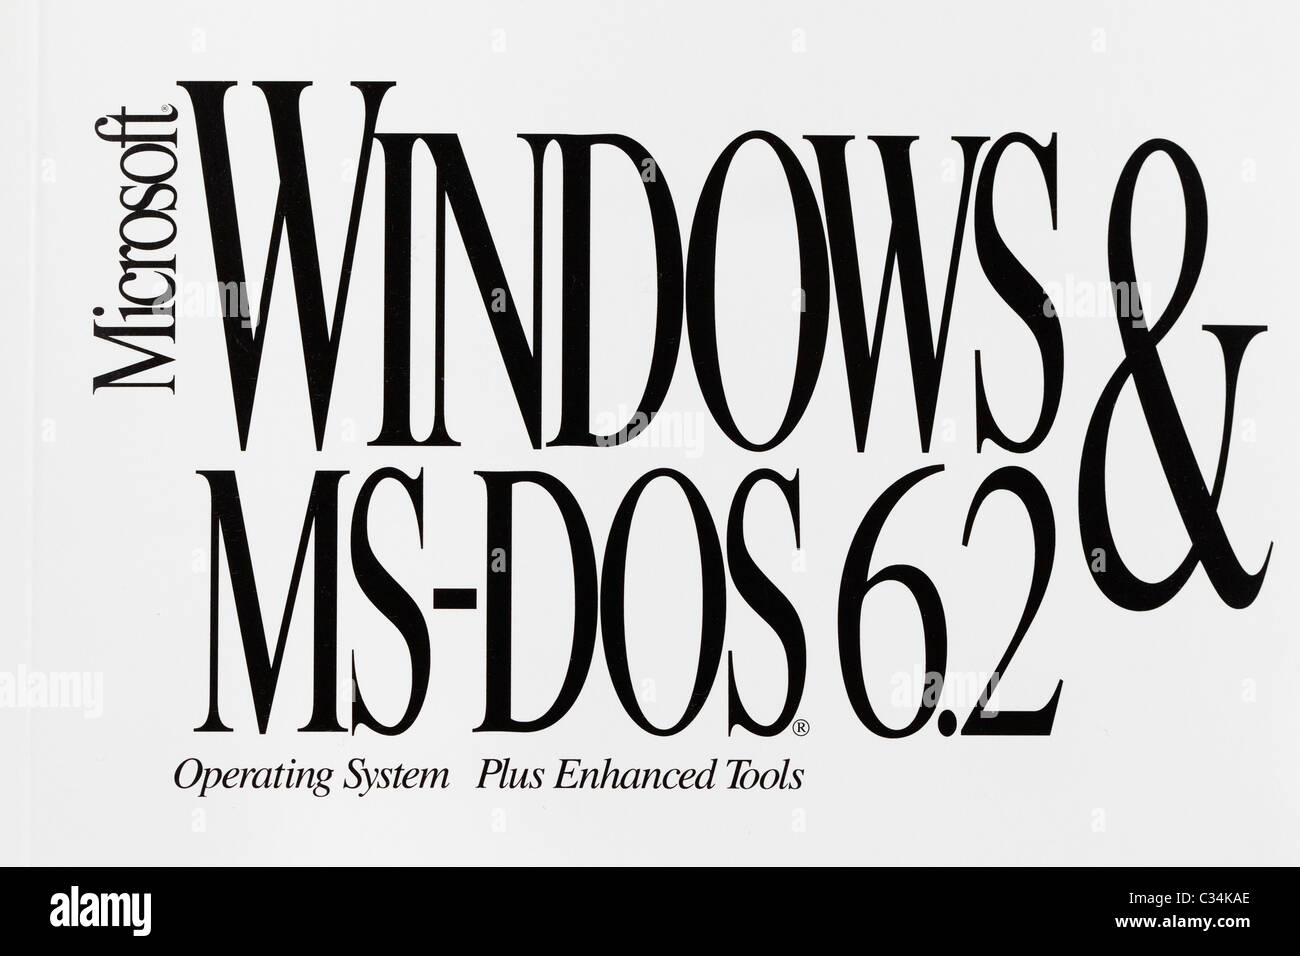 Close up dettaglio di un vecchio Microsoft Windows e MS-DOS versione 6.2 manuale, circa all'inizio degli anni novanta. Foto Stock